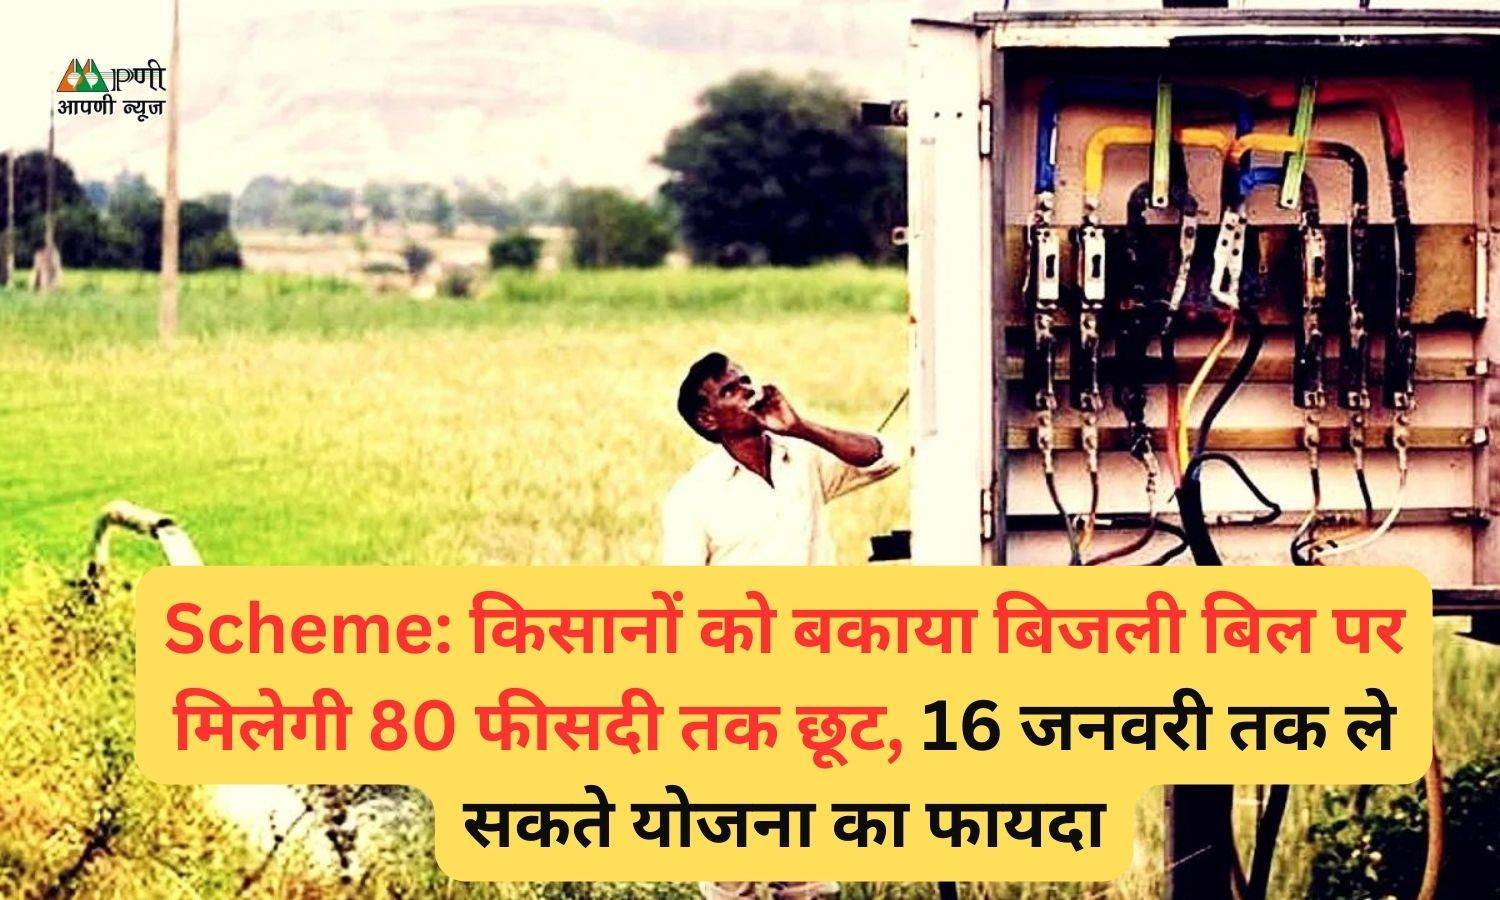 Scheme: किसानों को बकाया बिजली बिल पर मिलेगी 80 फीसदी तक छूट, 16 जनवरी तक ले सकते योजना का फायदा